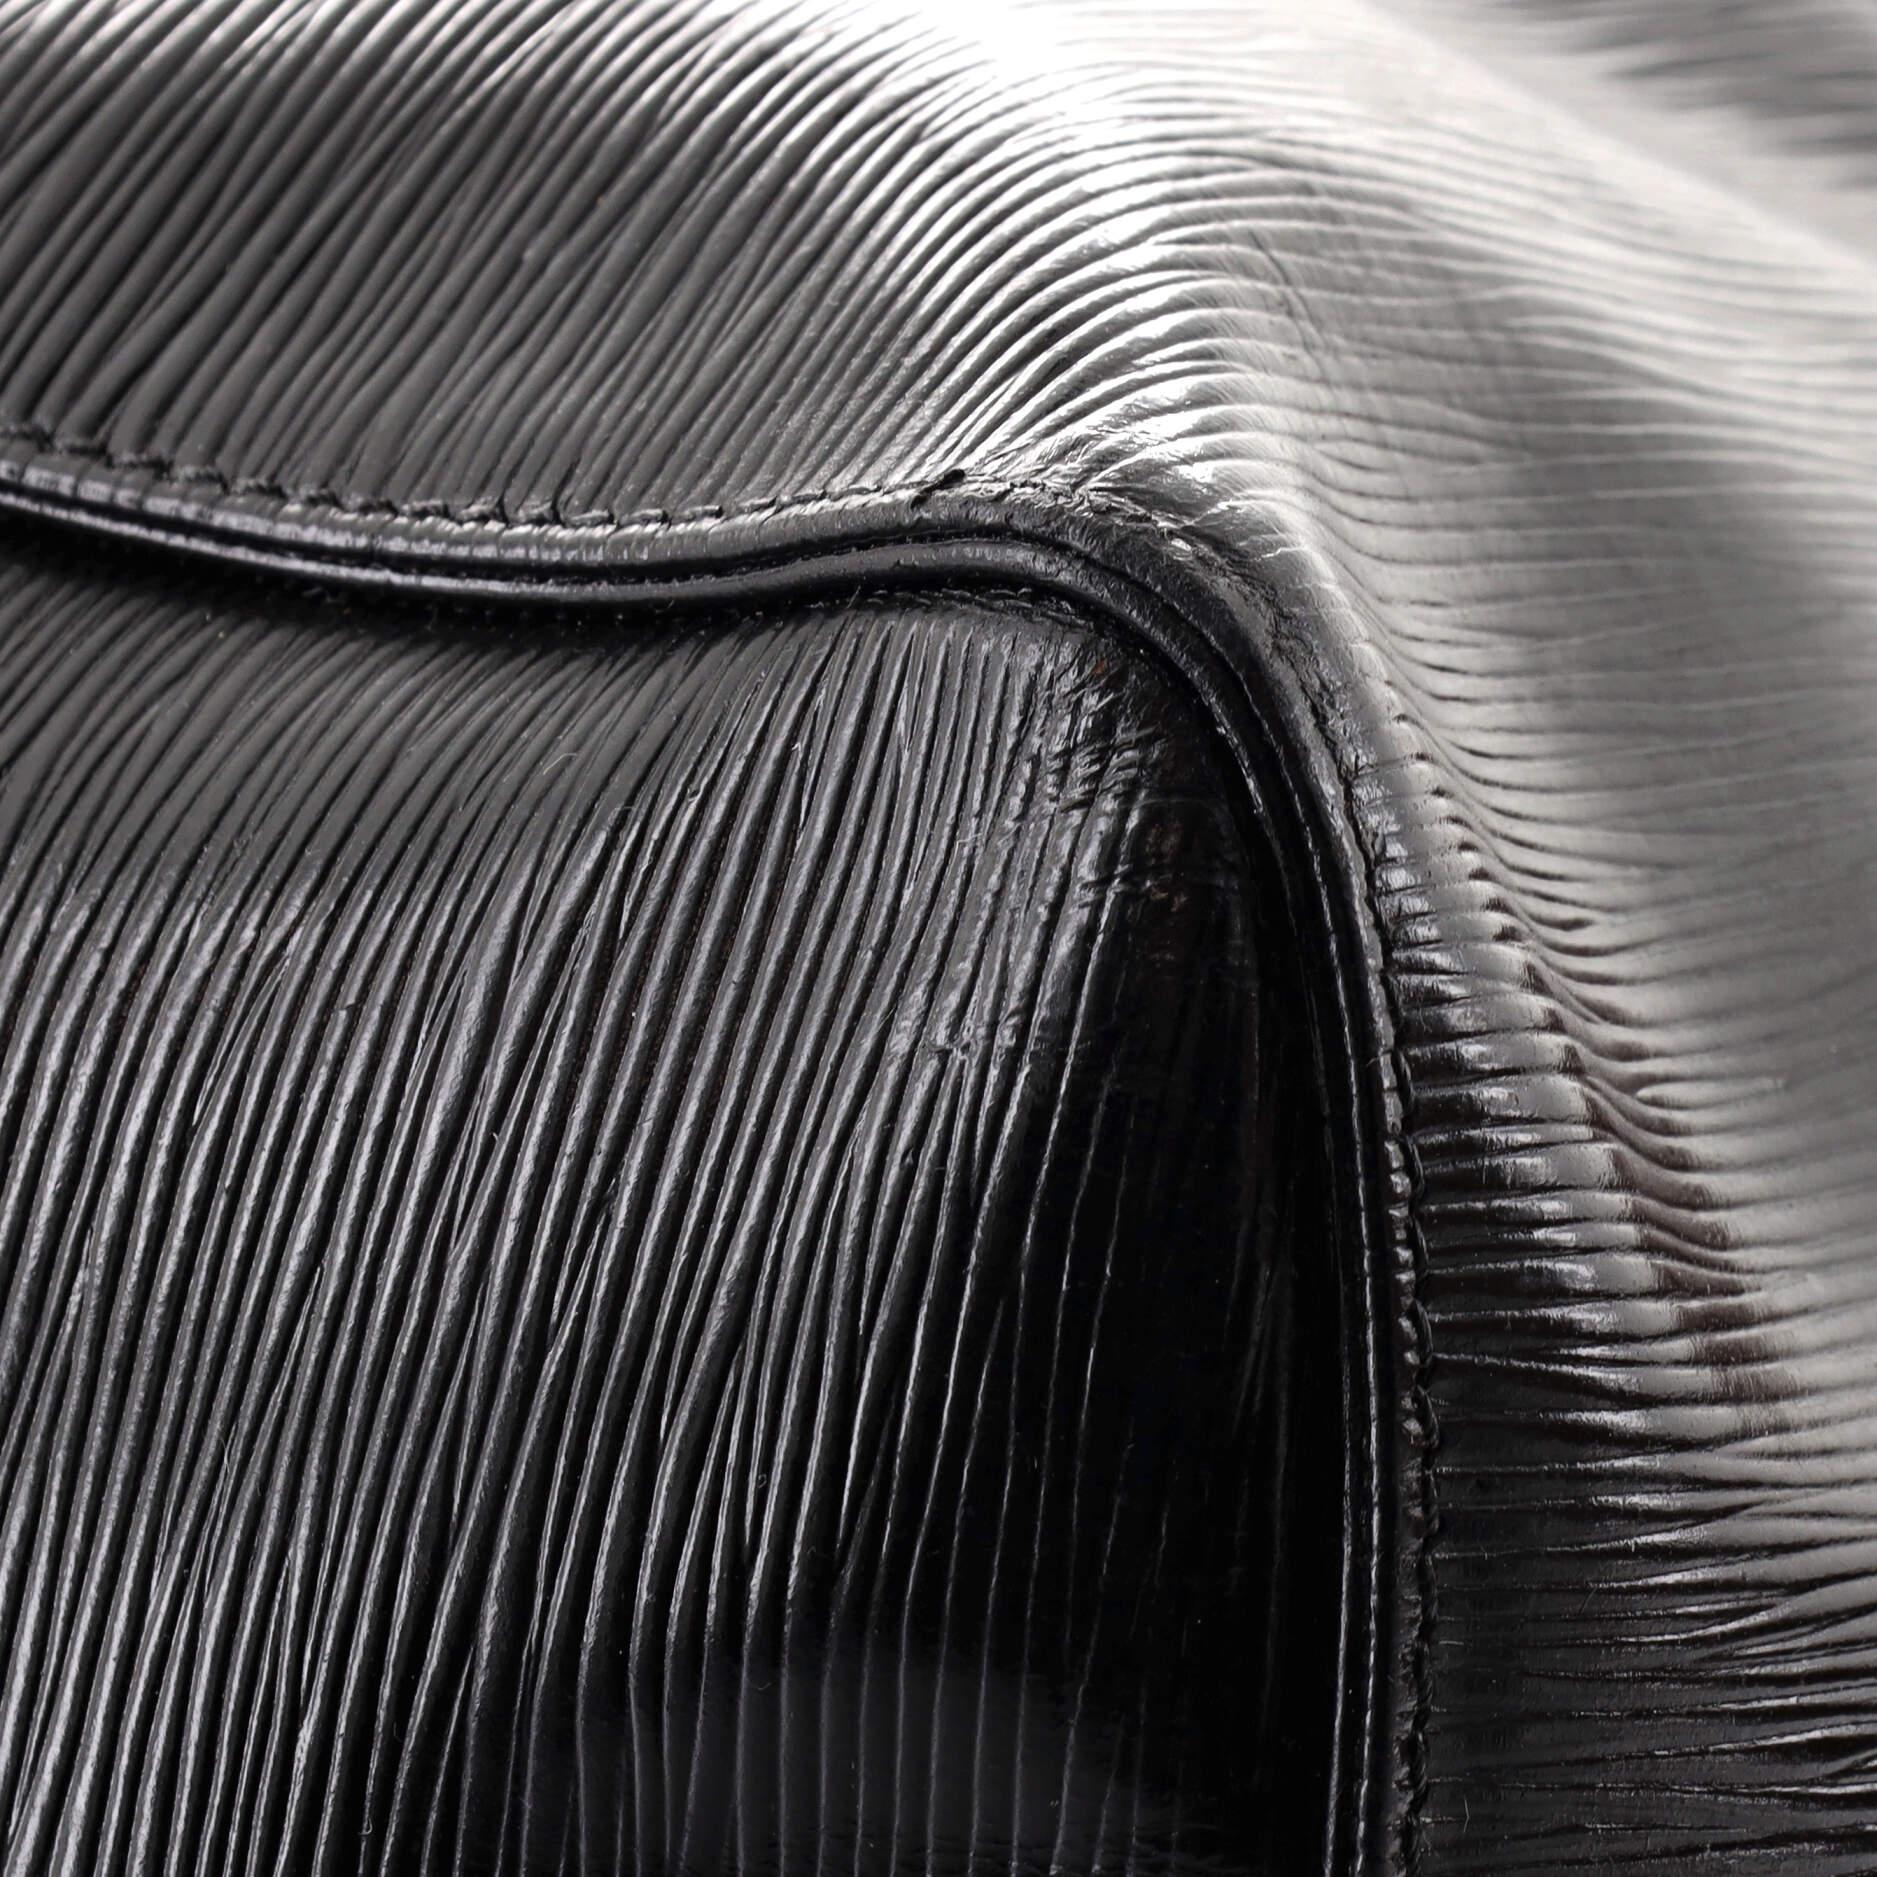 Louis Vuitton Keepall Bag Epi Leather 50 2